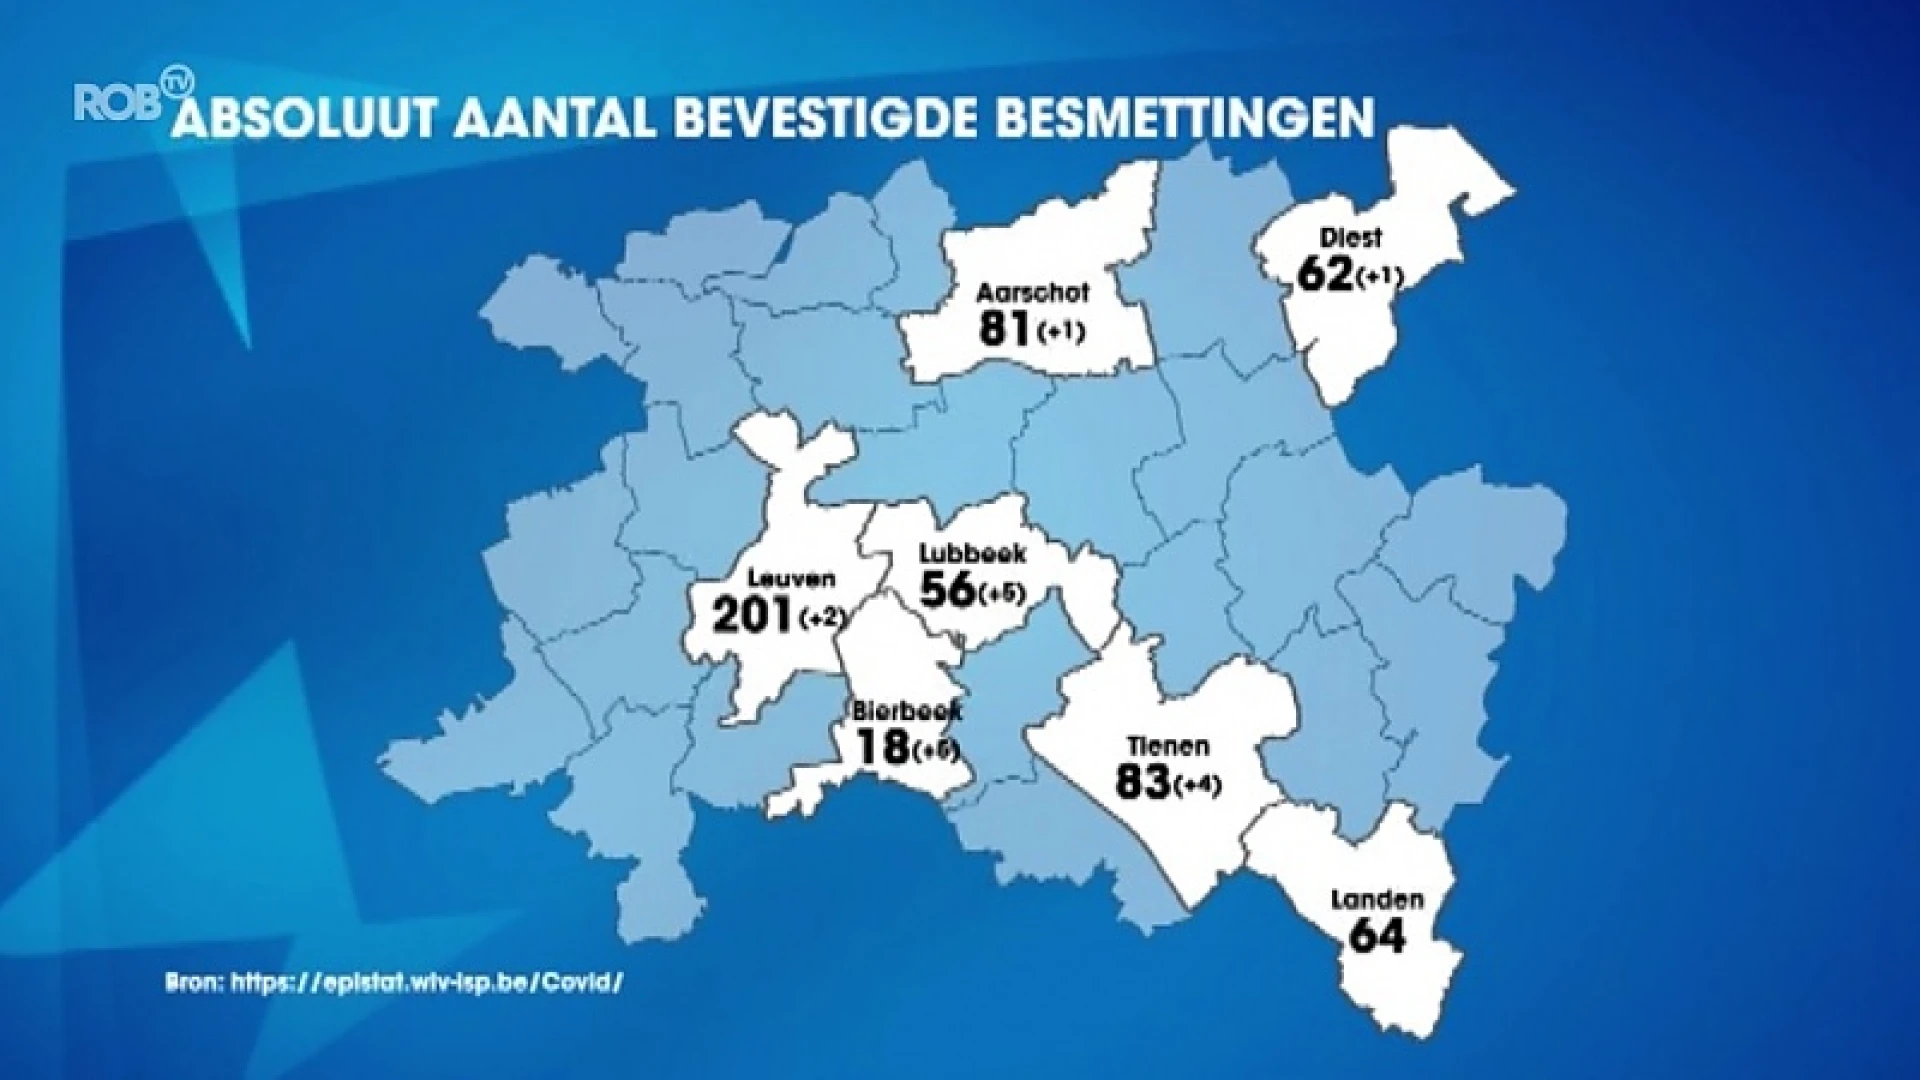 1127 bevestigde besmettingen in Oost-Brabant: 34 meer dan gisteren